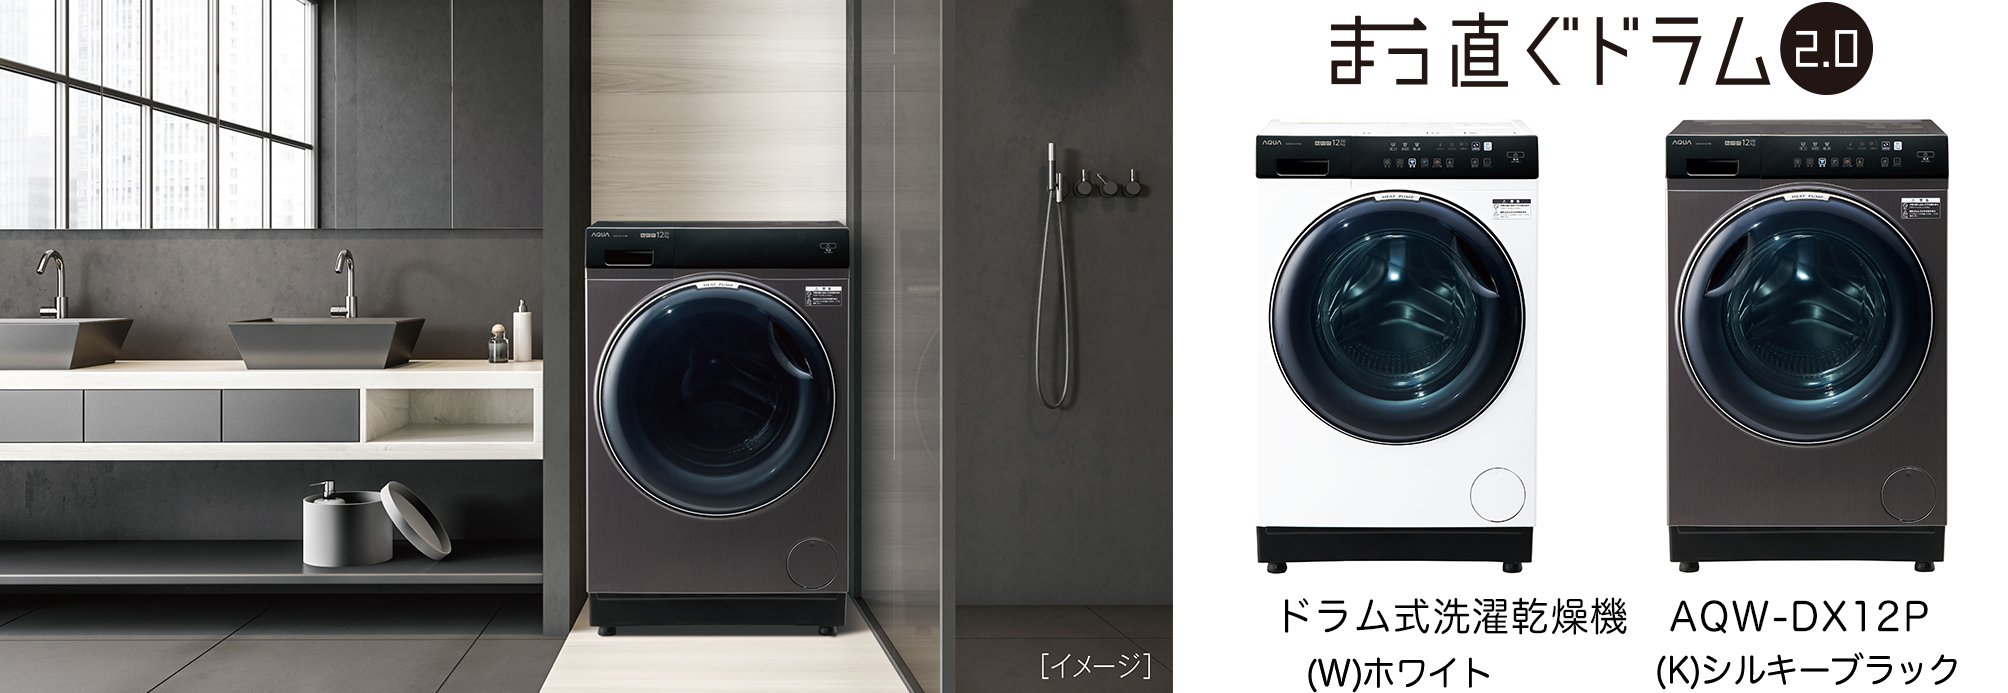 未使用】SANYO ドラム式洗濯乾燥機 9キロ - 生活家電